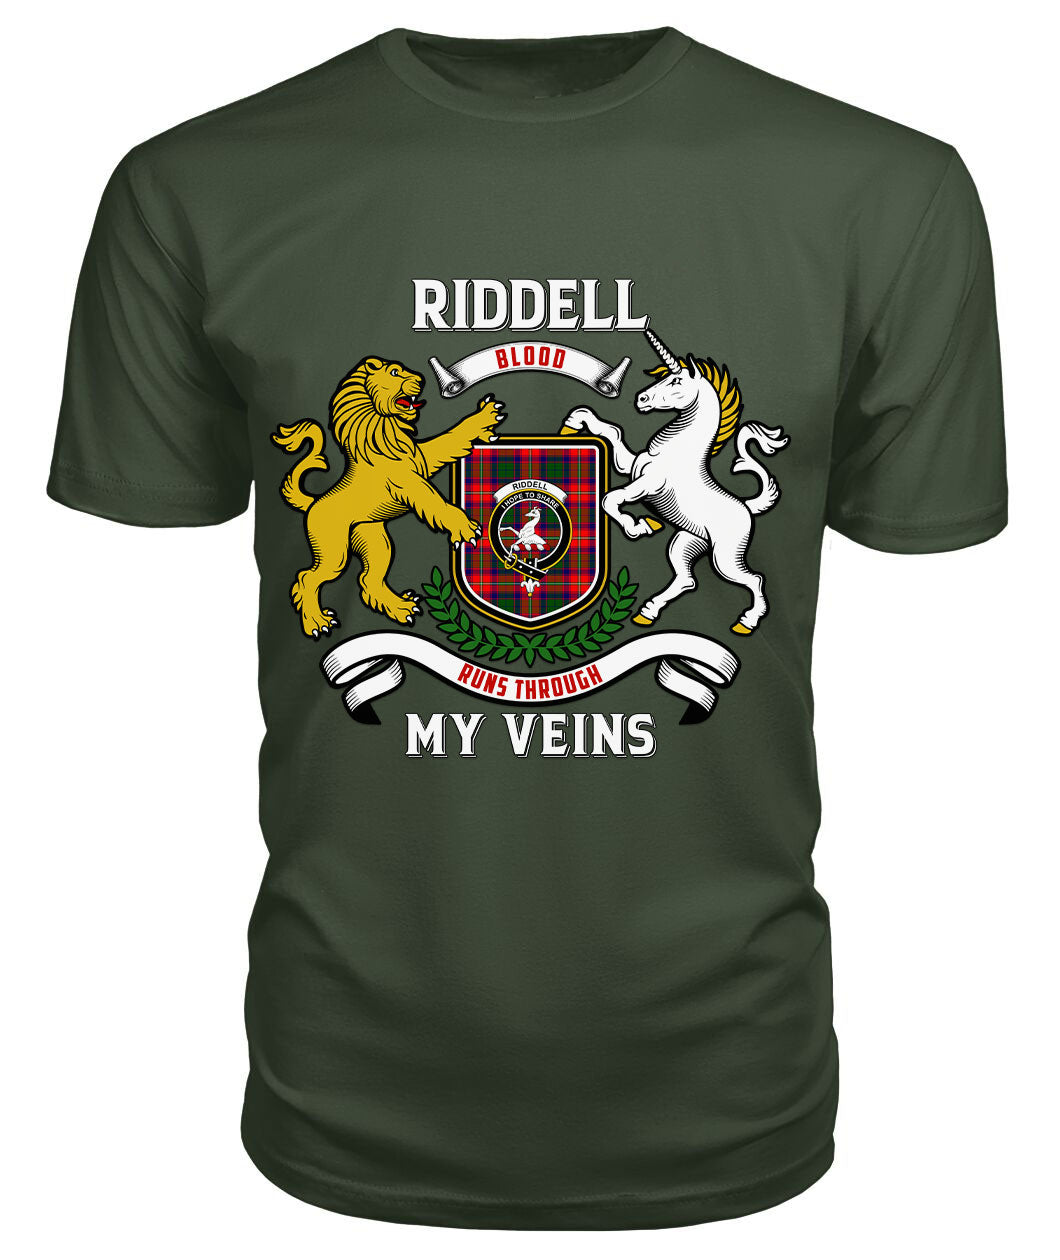 Riddell Tartan Crest 2D T-shirt - Blood Runs Through My Veins Style